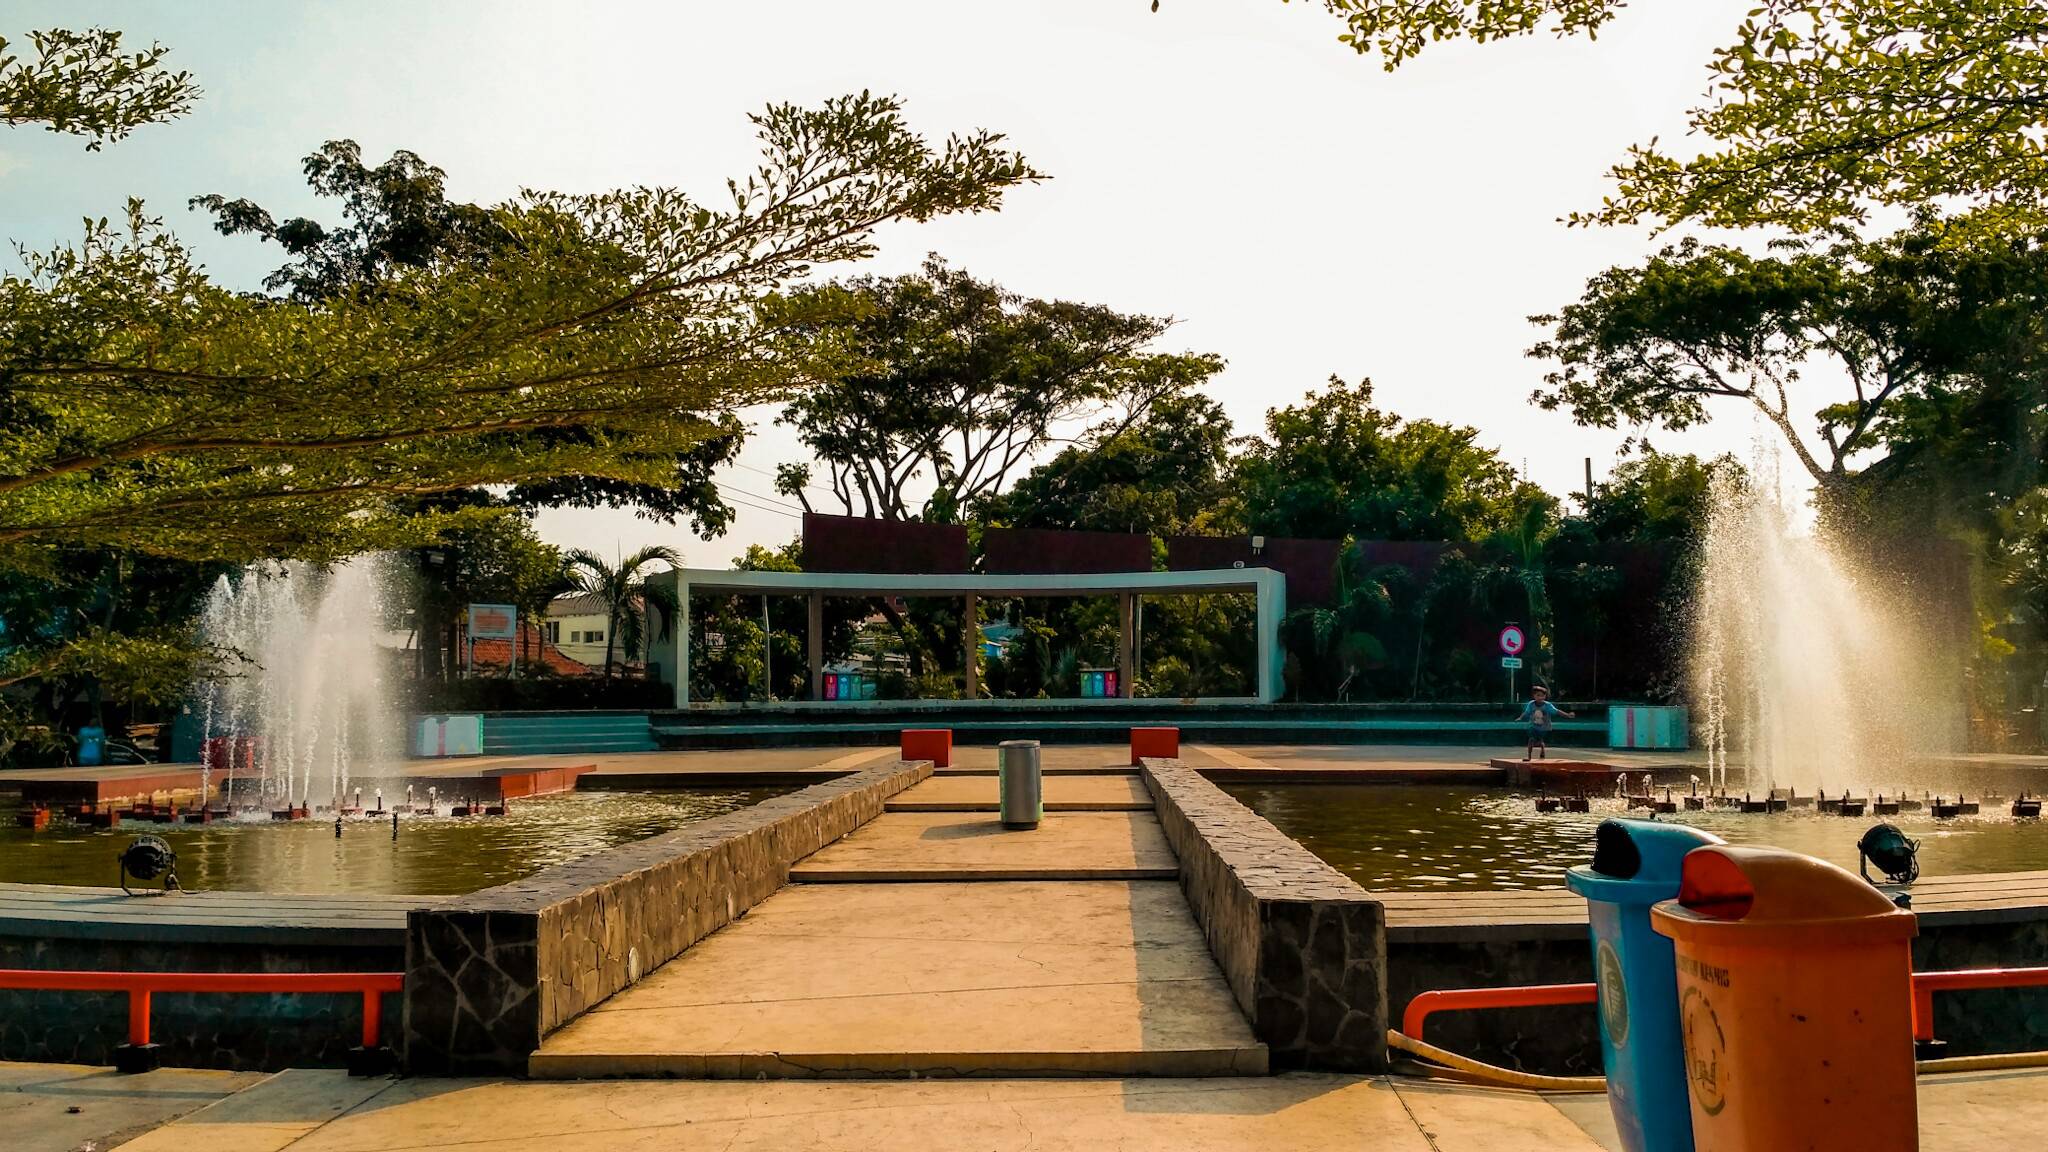 Sanggar Lukis Galeri Surabaya Taman Wisata